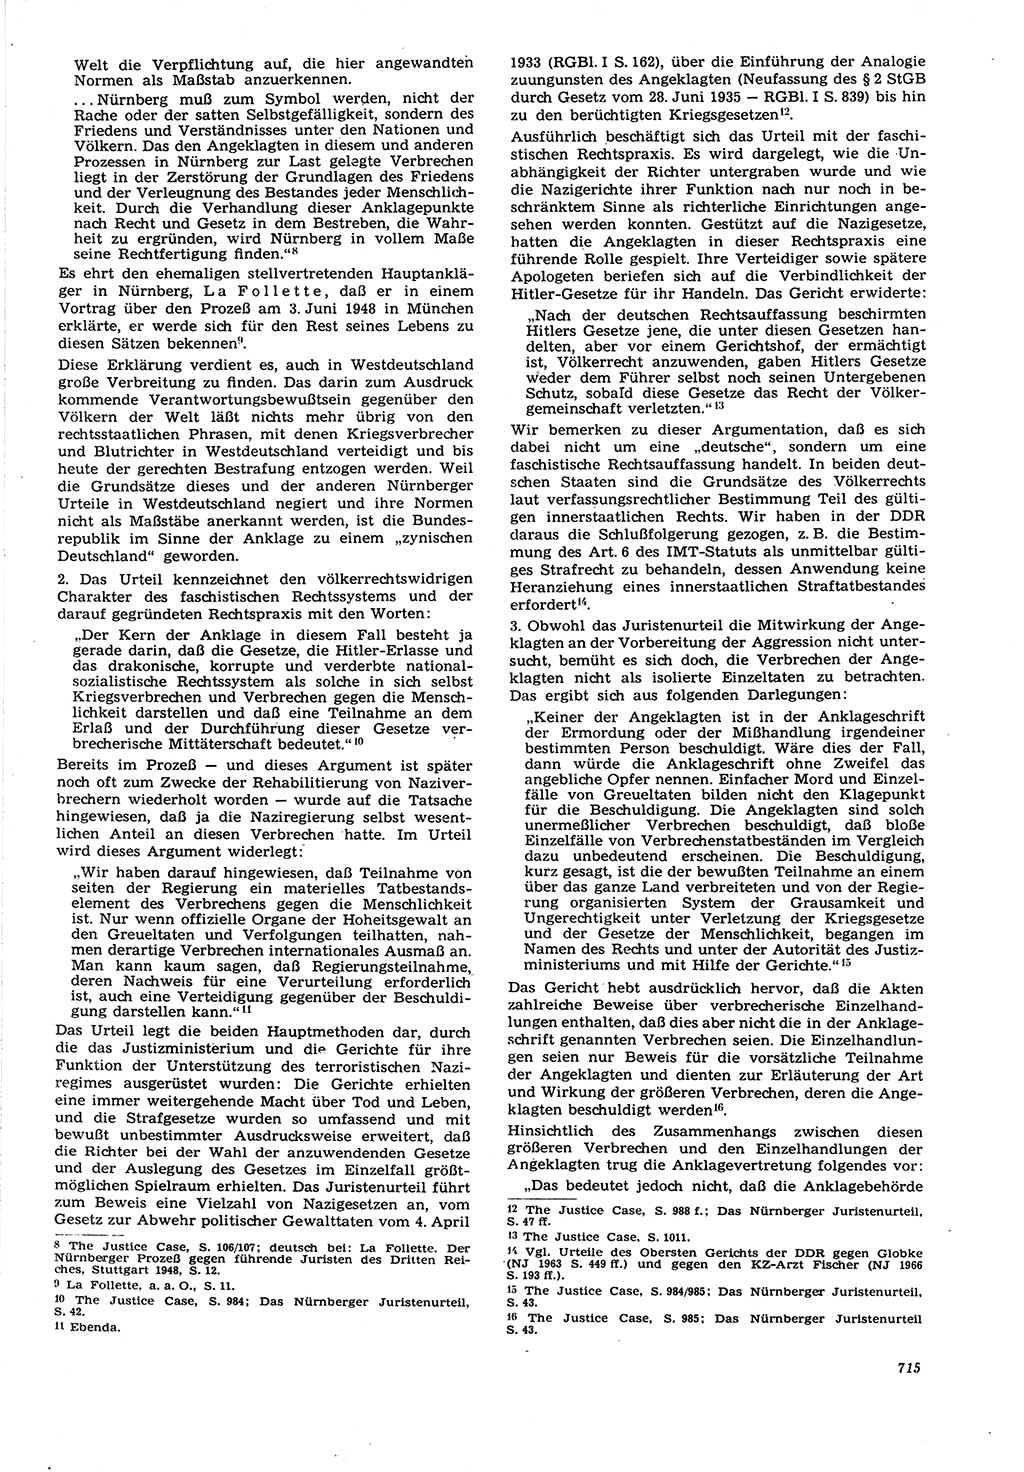 Neue Justiz (NJ), Zeitschrift für Recht und Rechtswissenschaft [Deutsche Demokratische Republik (DDR)], 21. Jahrgang 1967, Seite 715 (NJ DDR 1967, S. 715)